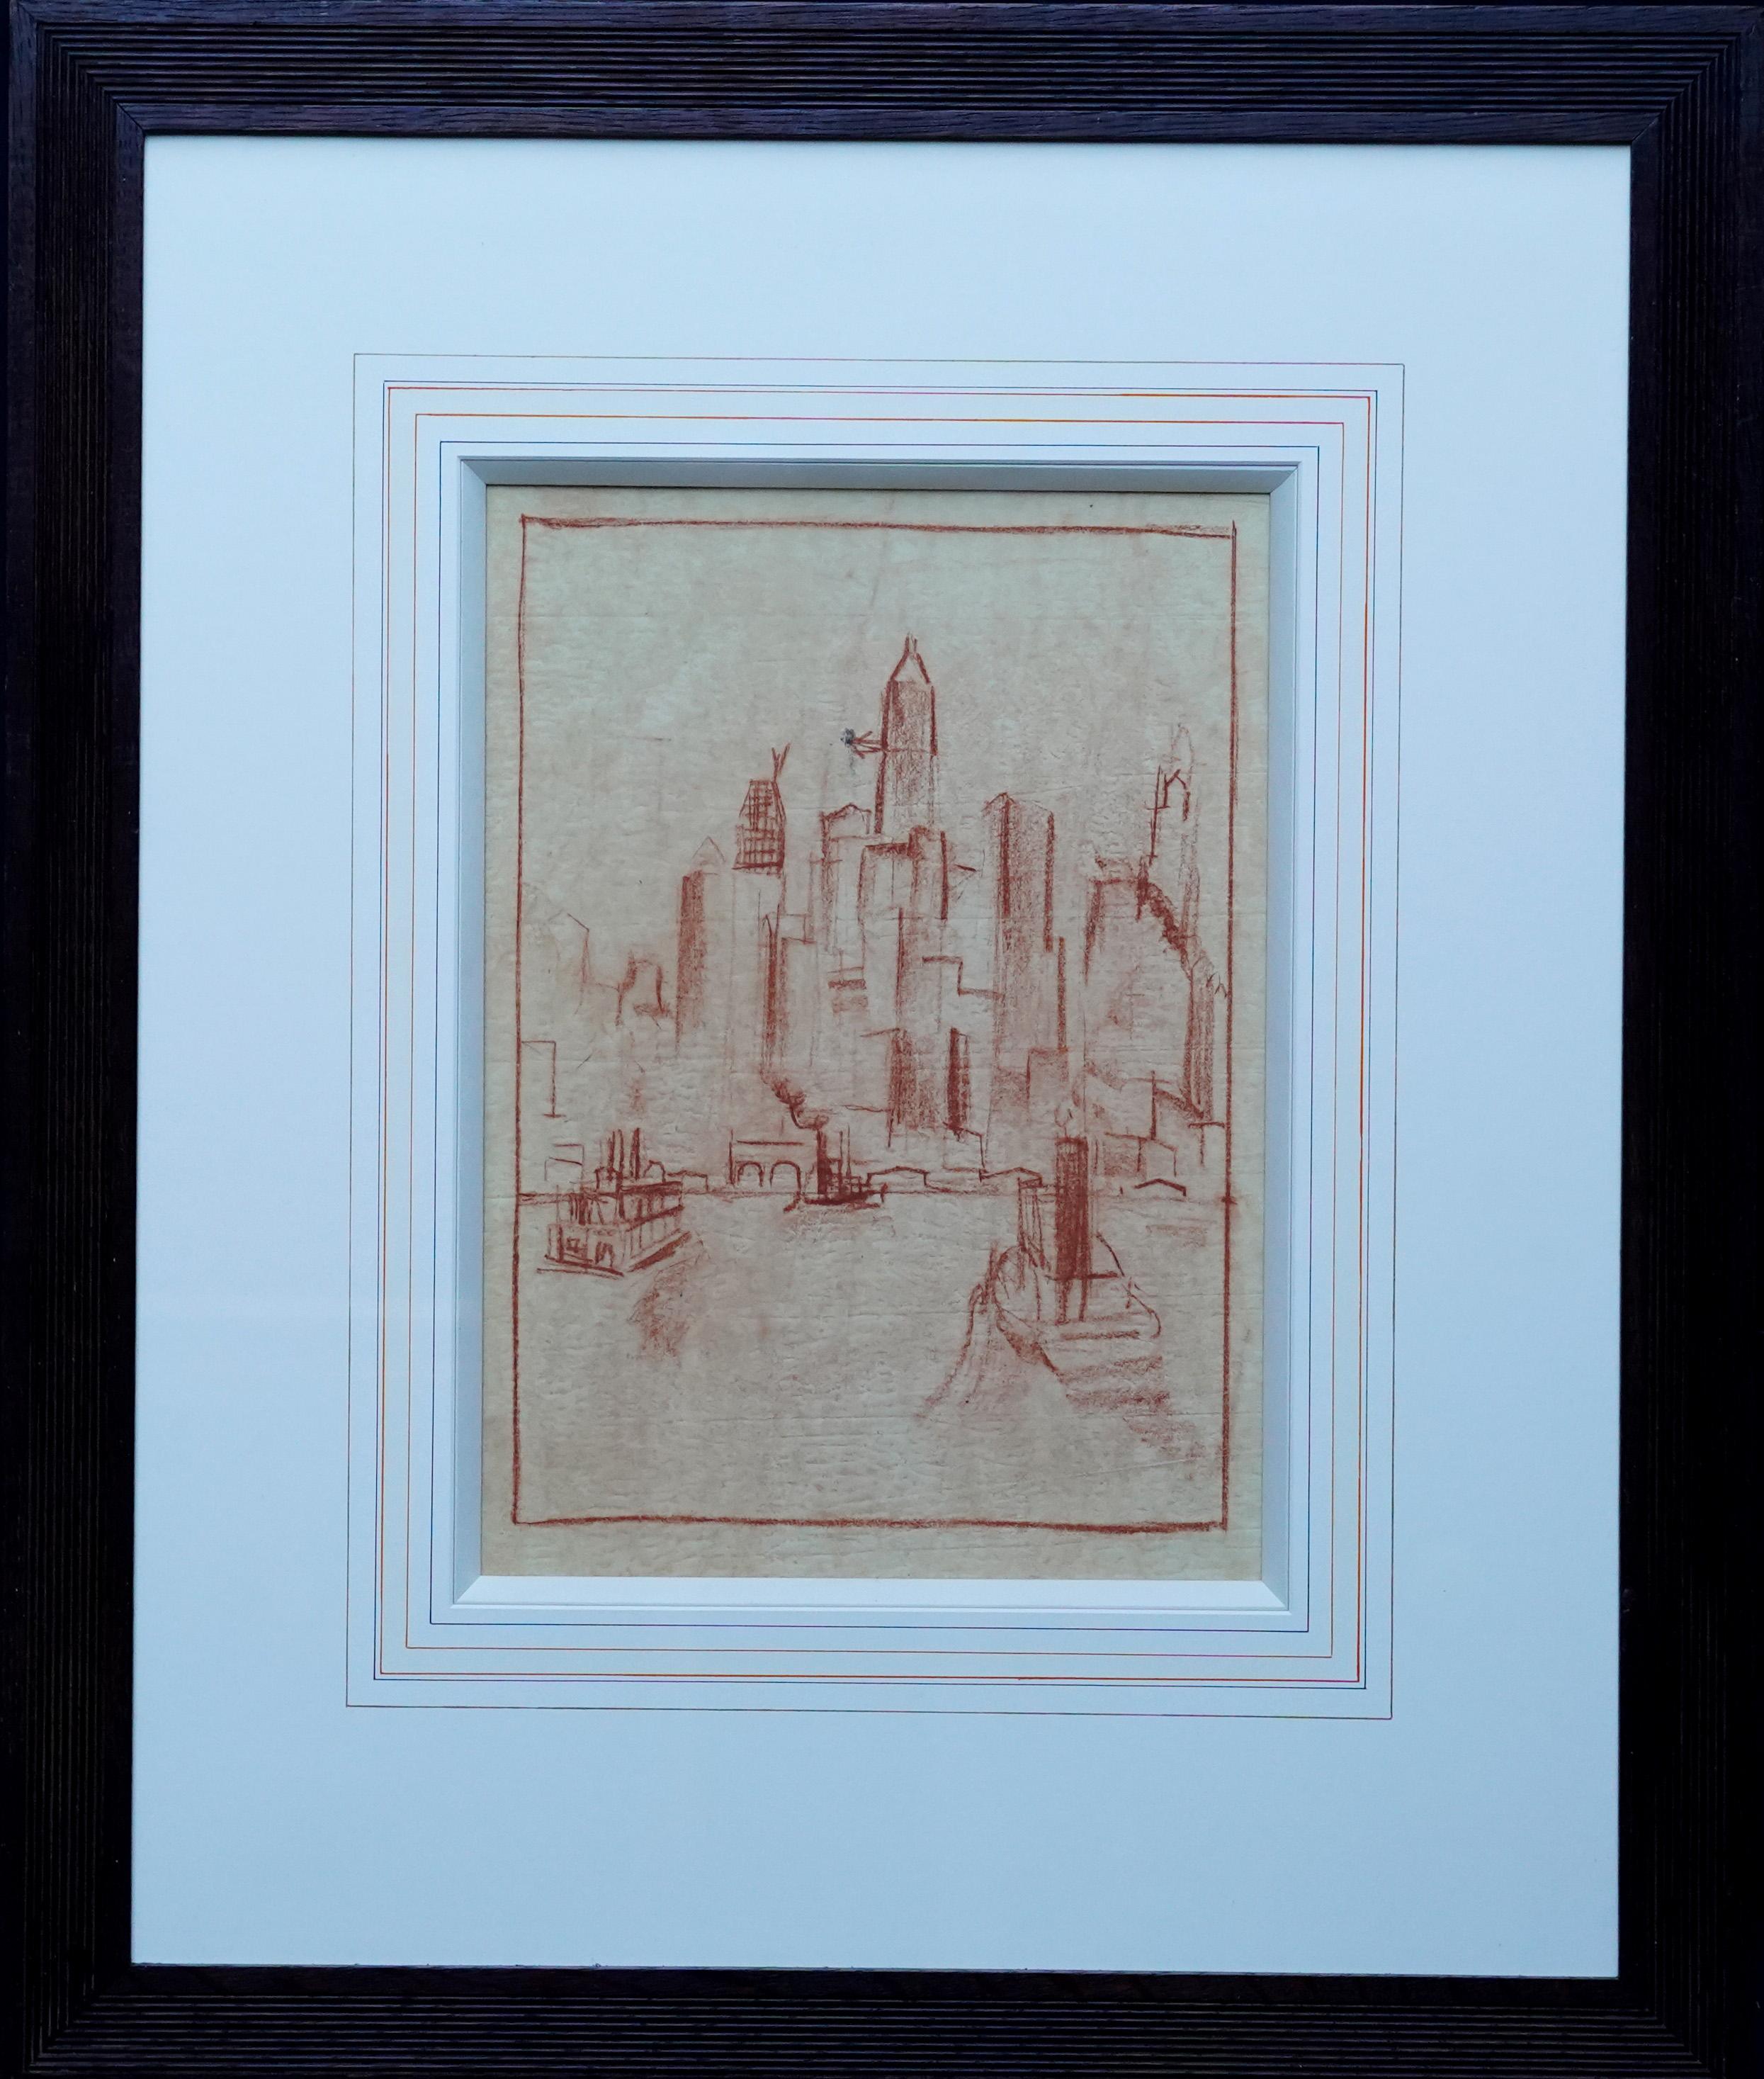 Manhattan from the River - dessin au crayon d'art néerlandais des années 1920 dans la ville de New York